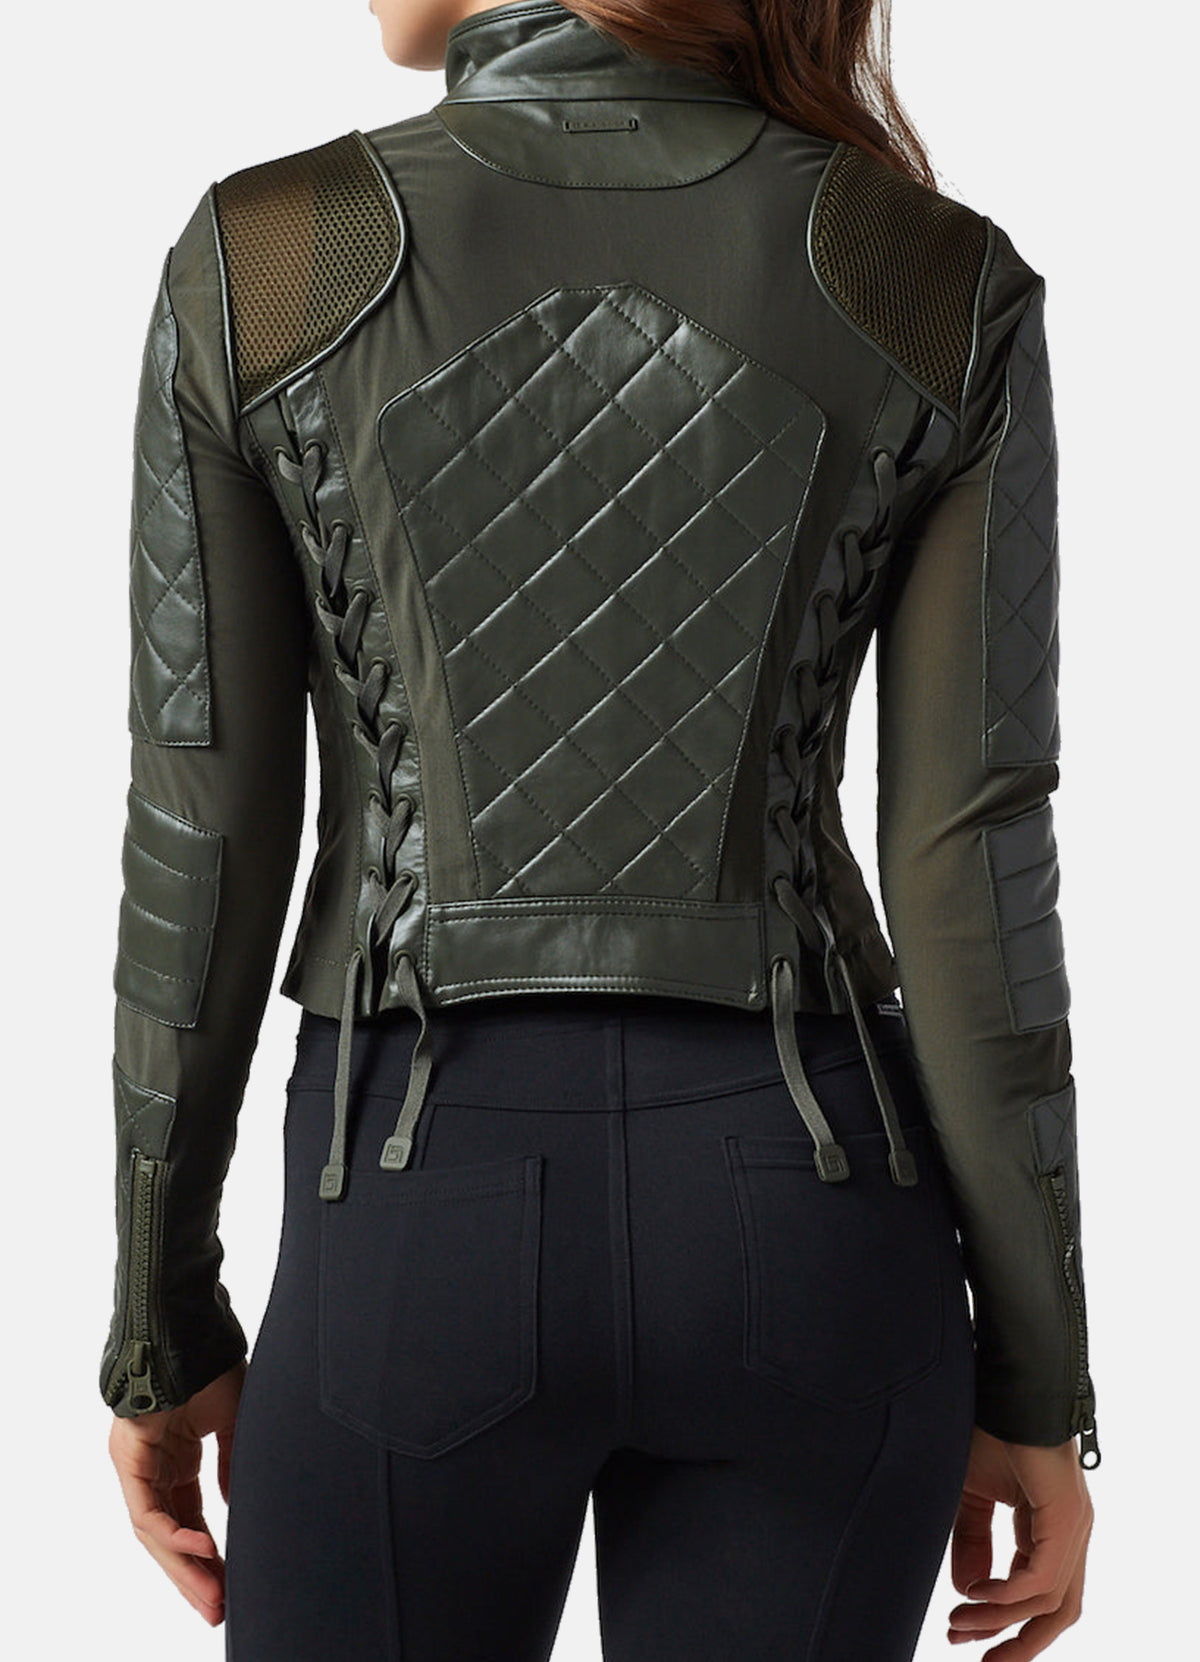 Womens Olive Green Biker Leather Jacket | Elite Jacket